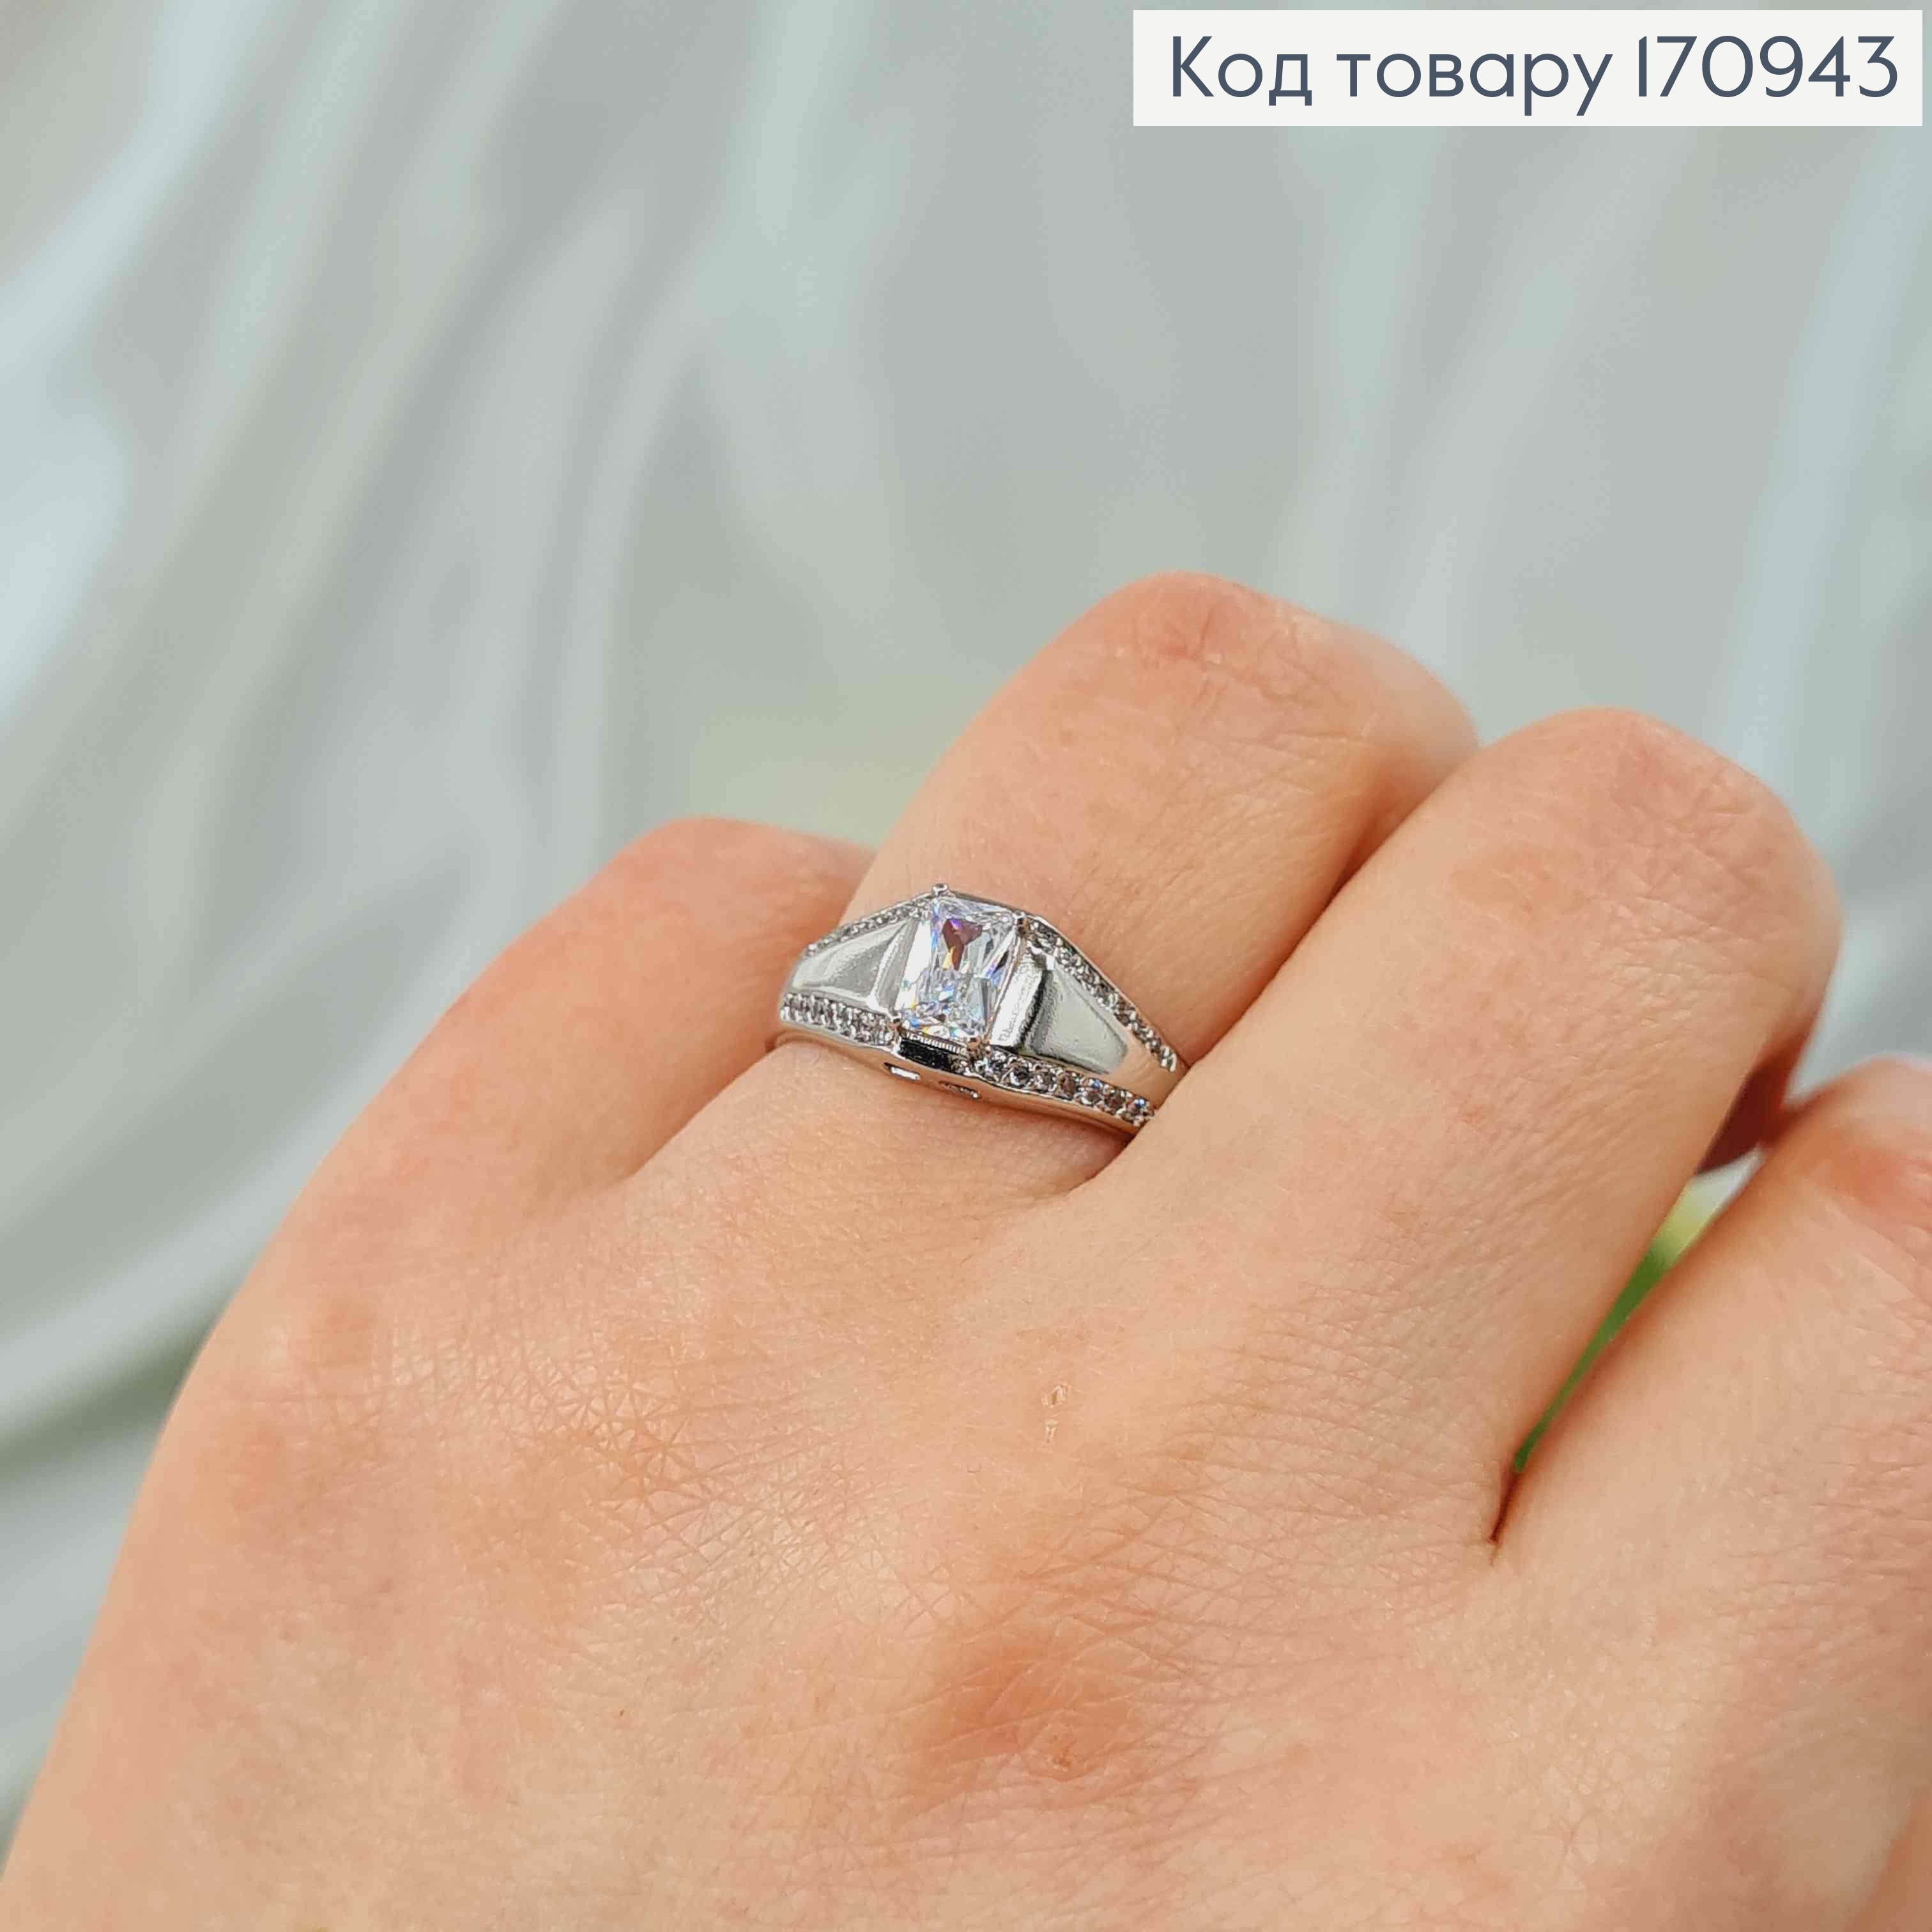 Кольцо родованное, Печать с прямоугольным камешком, Xuping 18K 170943 фото 2